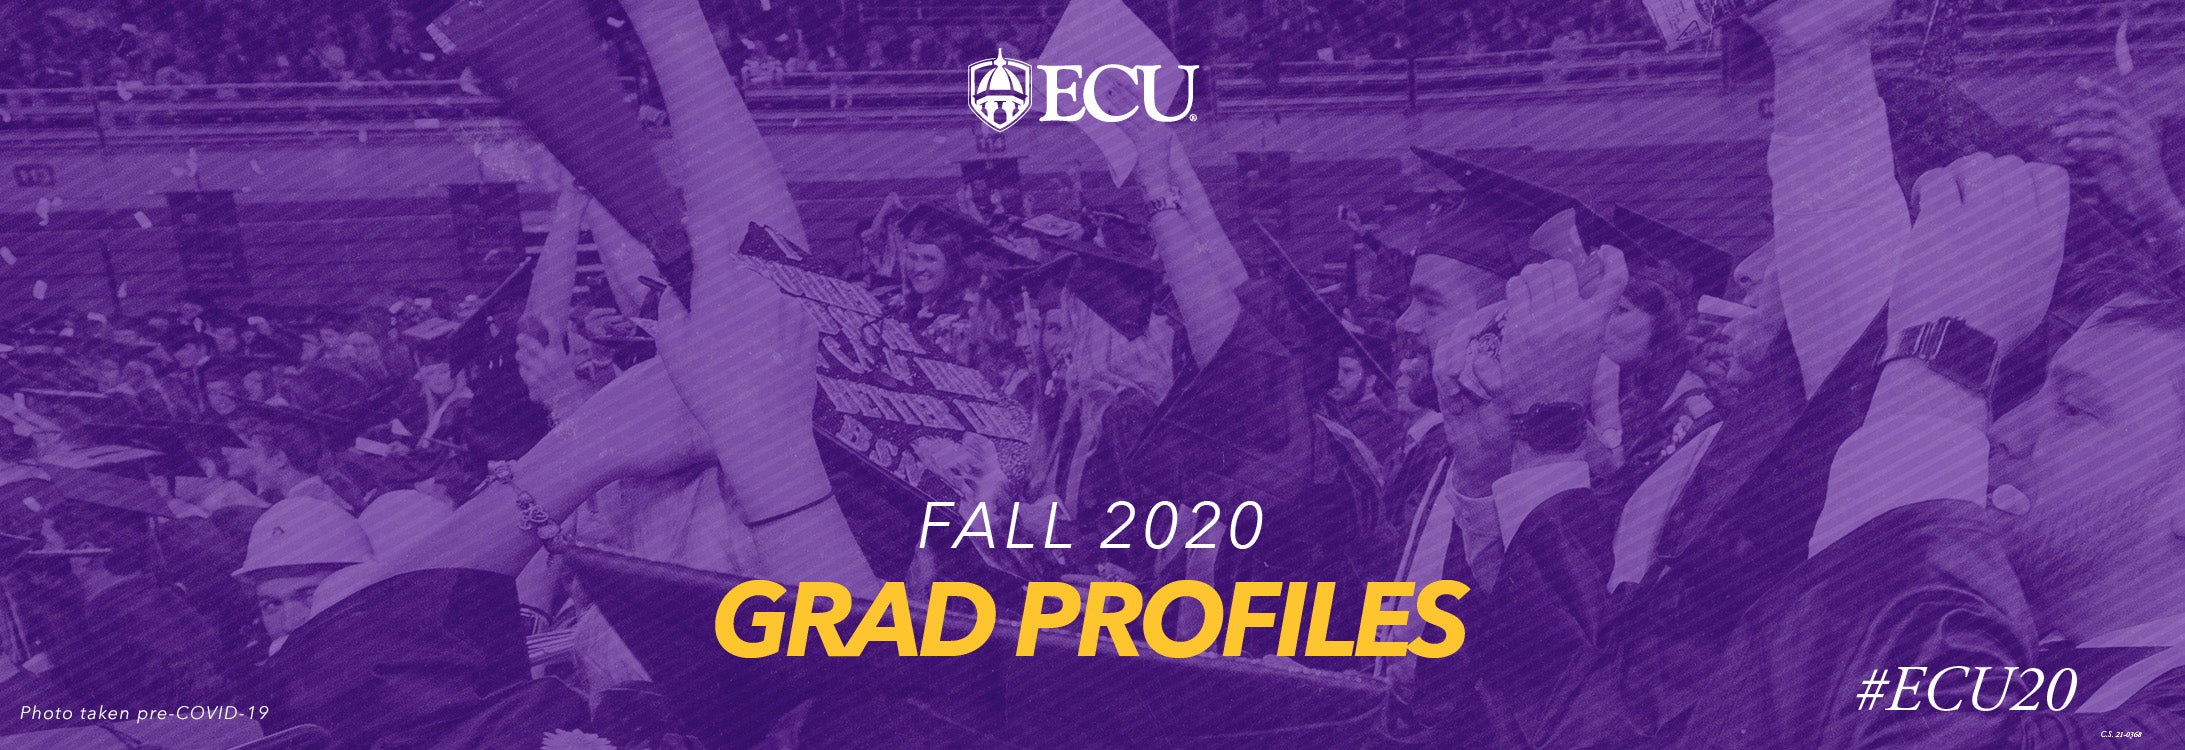 Fall 2020 Grad Profiles